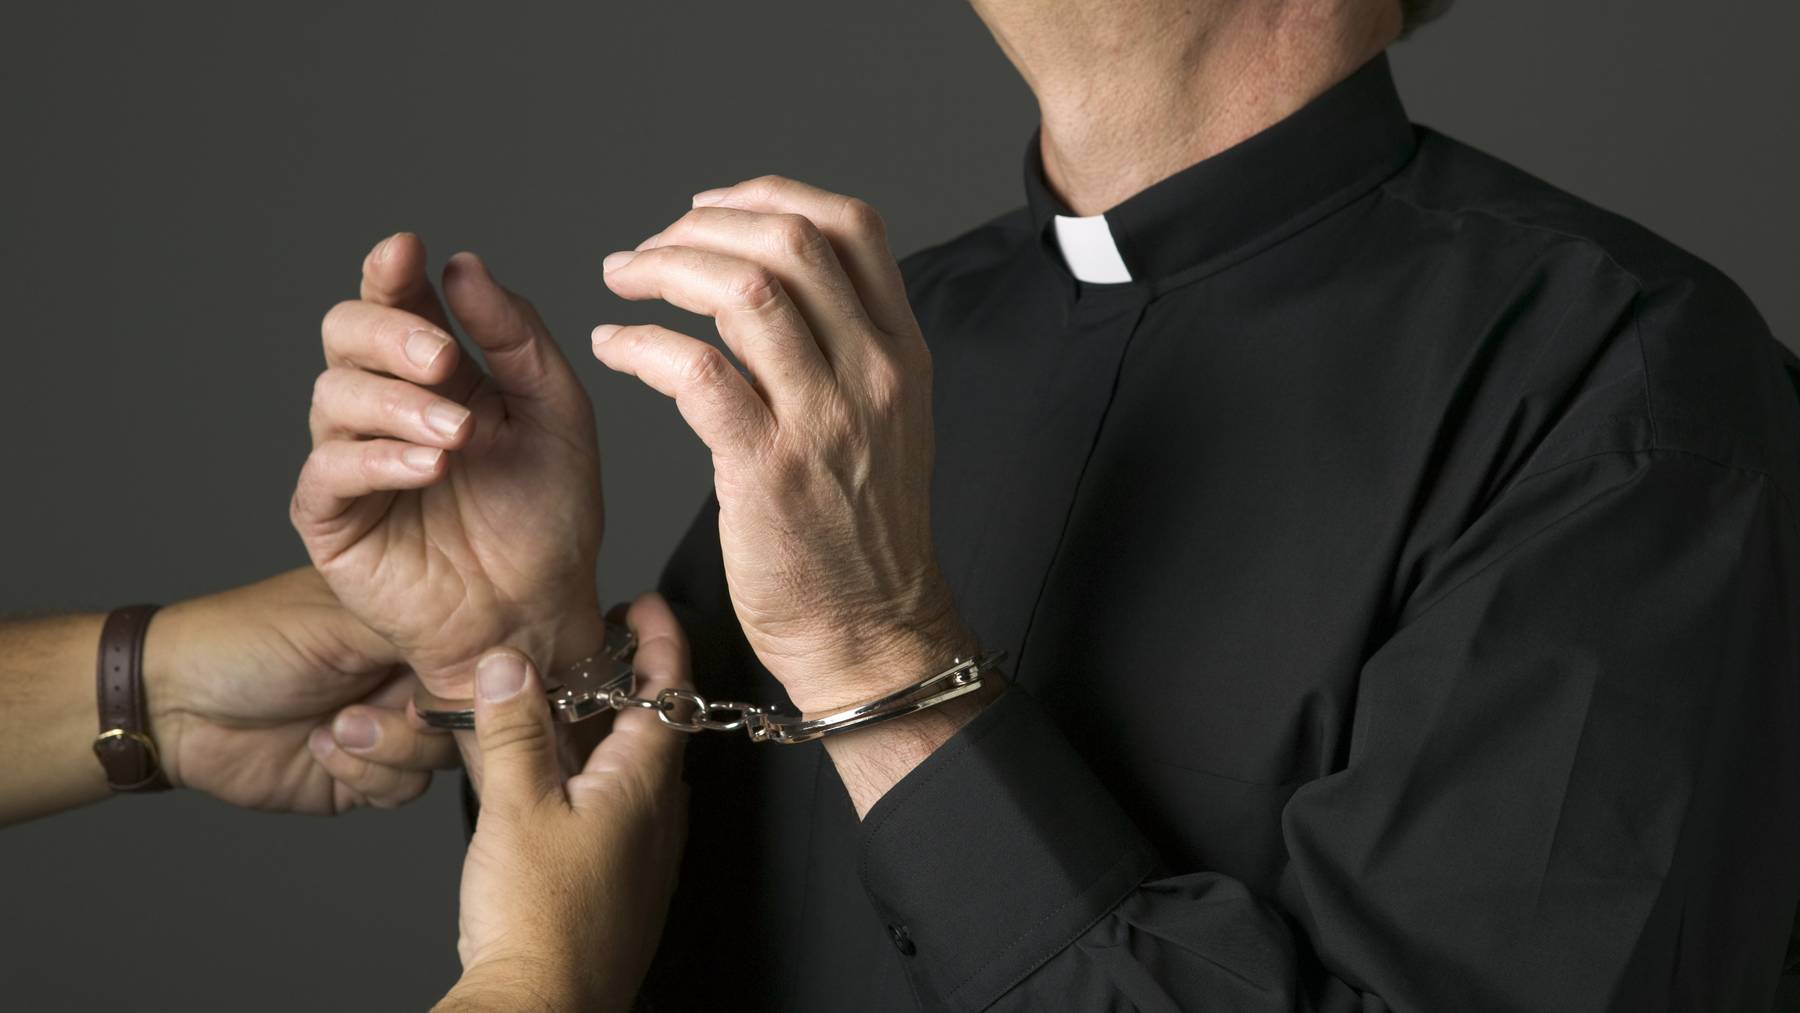 Der ehemalige Pfarrer wird wegen Betrug, Urkundenfälschung und Veruntreuung angeklagt. (Symbolbild)